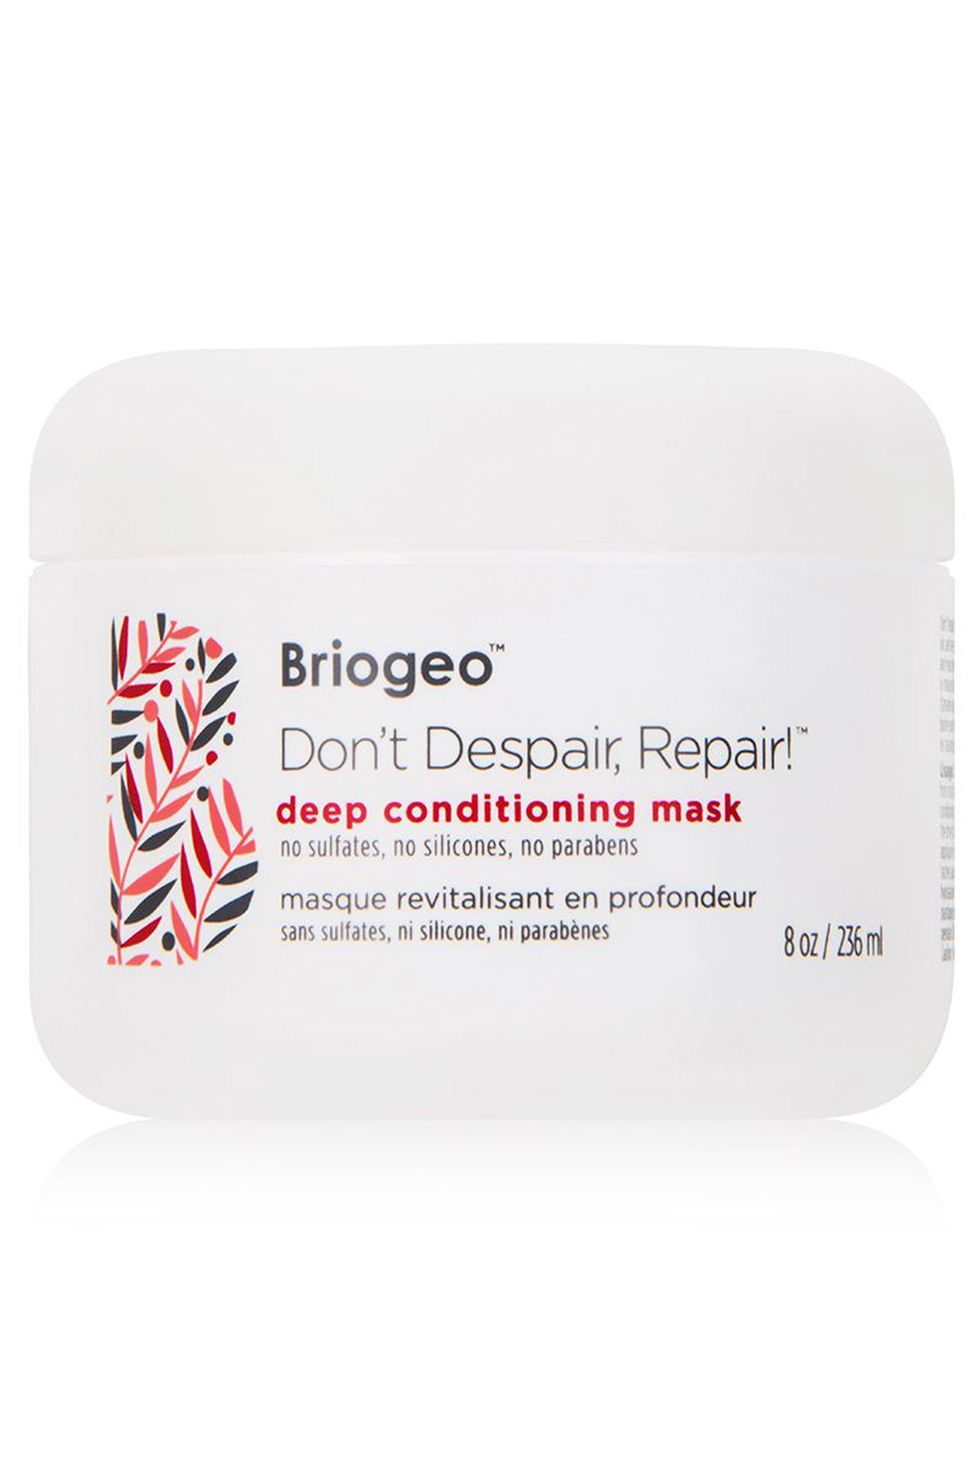 Briogeo Don’t Despair Repair Deep Conditioning Mask